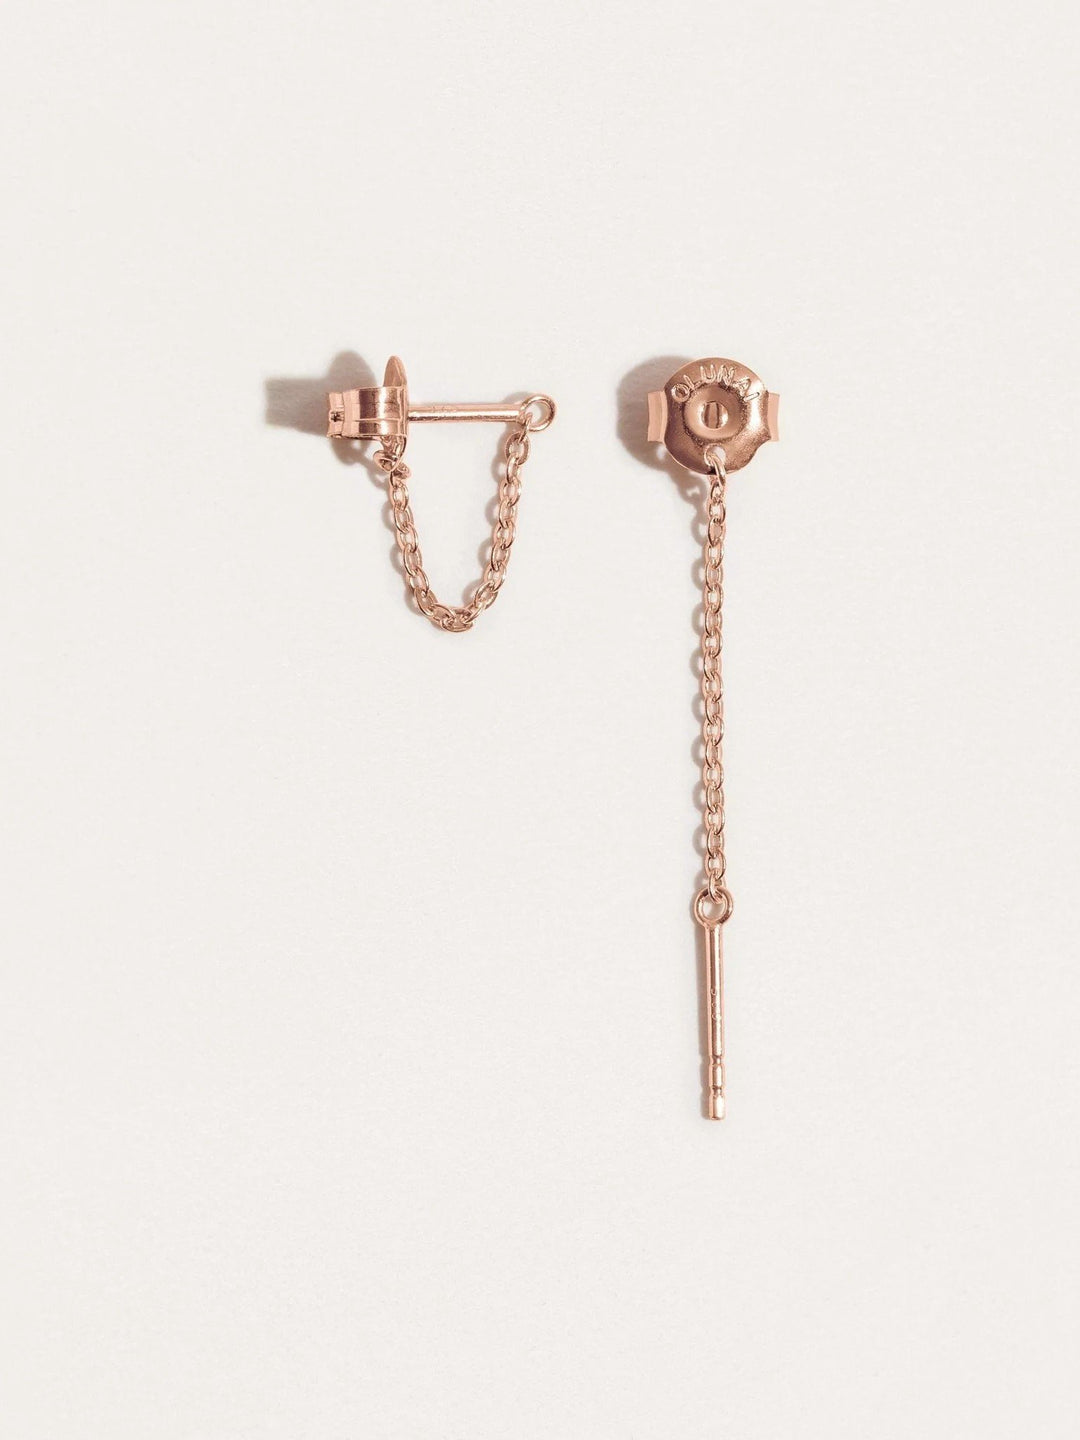 Taylor Chain Earrings - 18K Rose Gold PlatedBackUpItemsButterfly EarringsLunai Jewelry